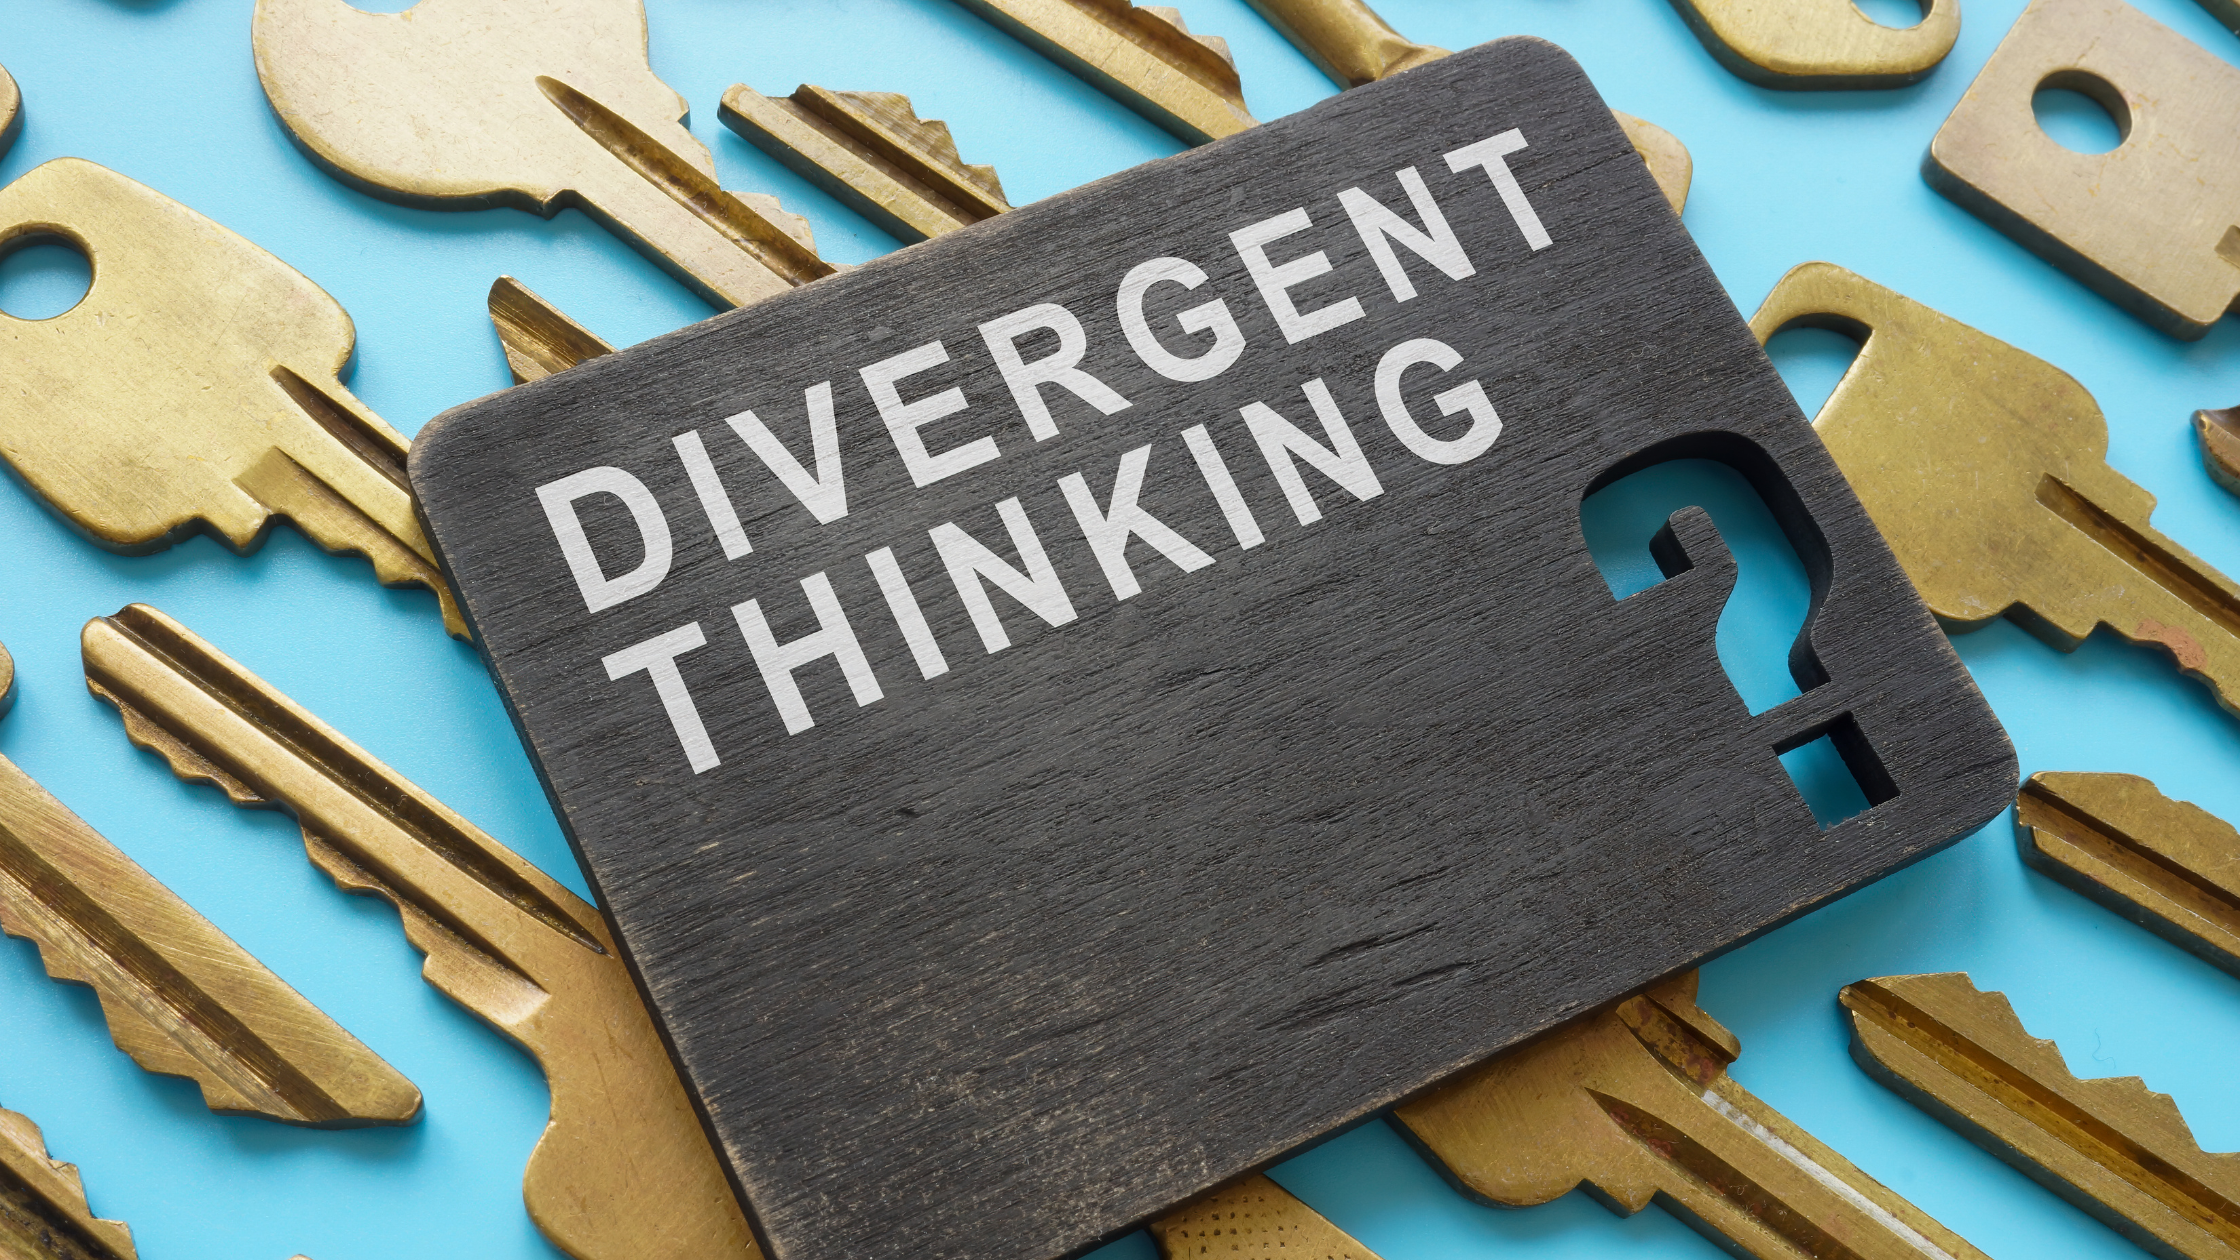 divergent thinking